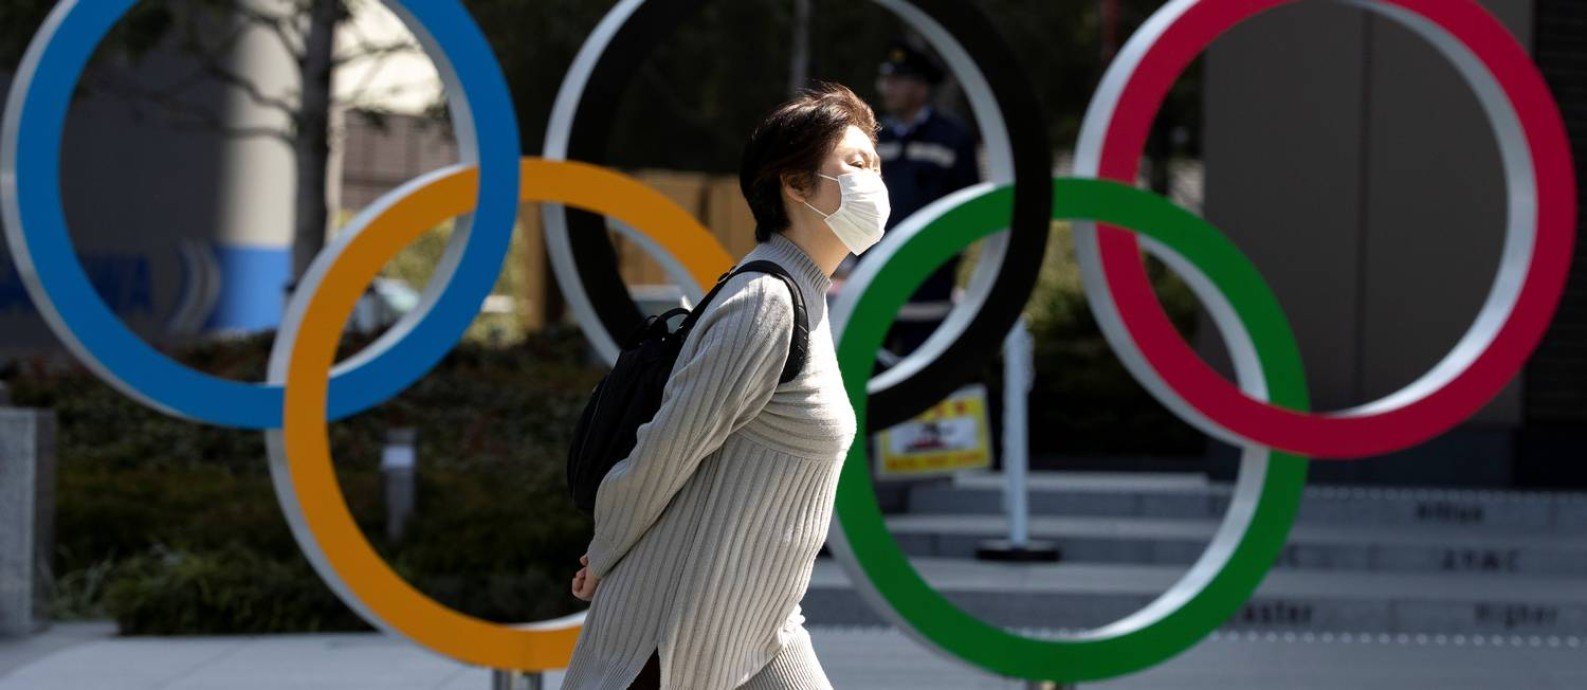 Tóquio-2020 pode ser um fracasso esportivo se não mudar; entenda